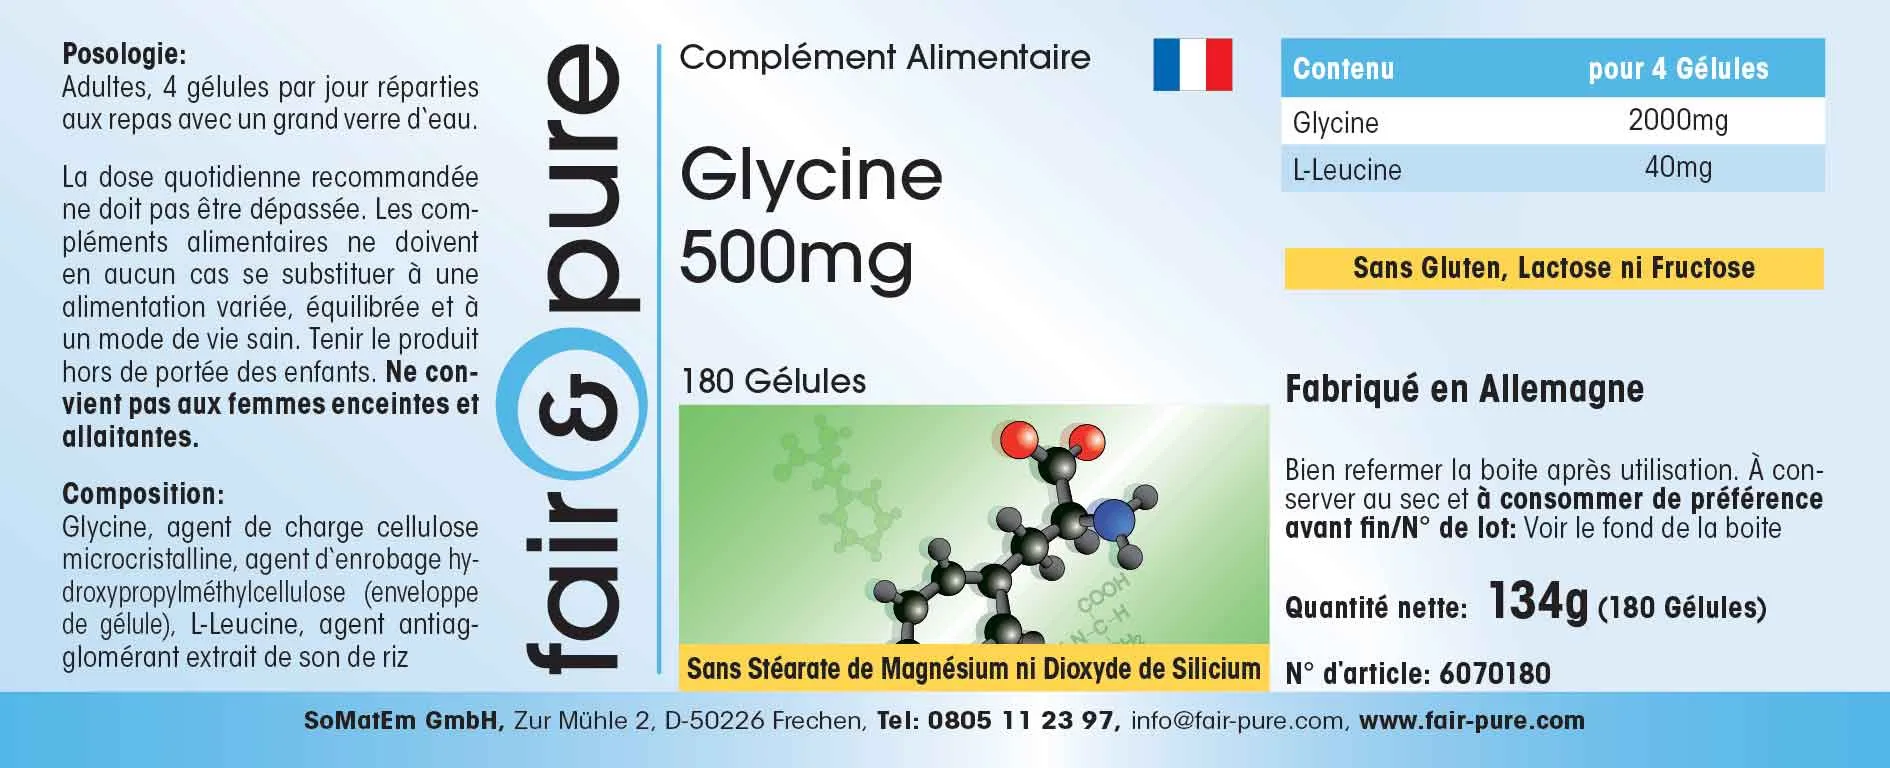 Glycin 500mg